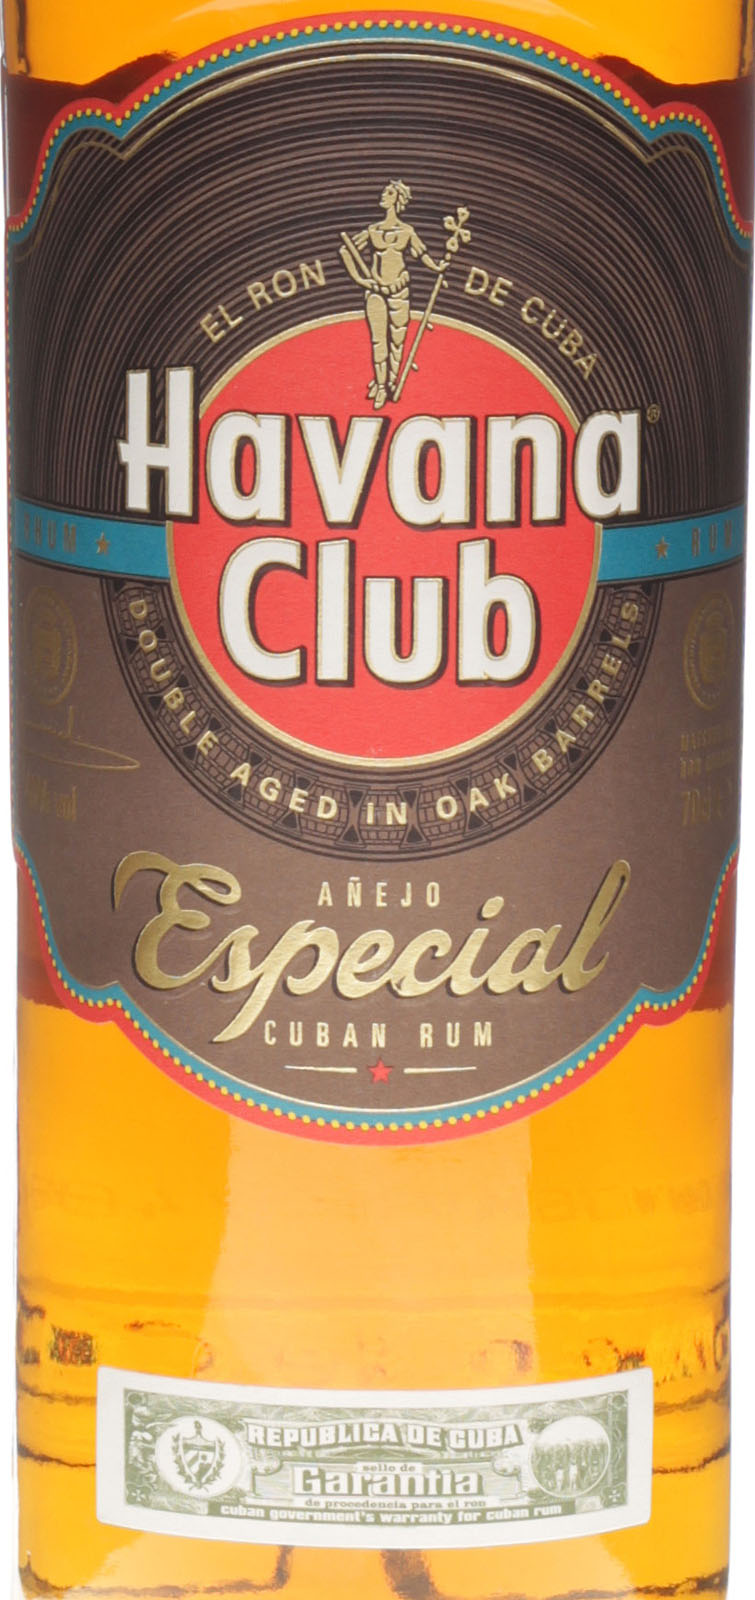 Havana Club Añejo Especial bei barfish.de kaufen